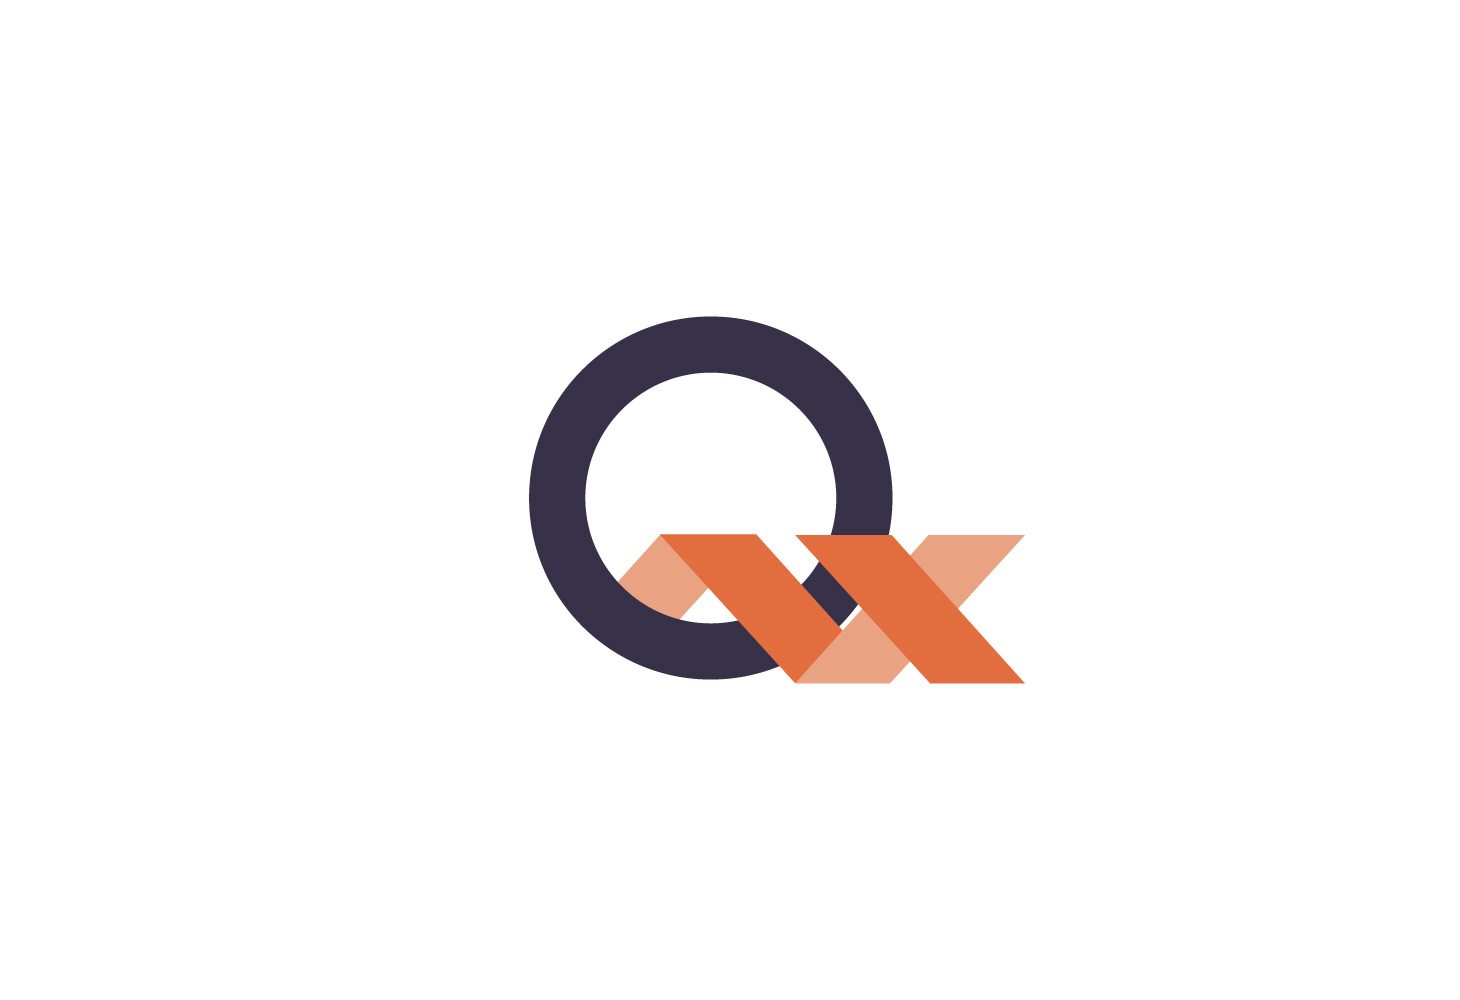 Quanta - Branding - the Q X